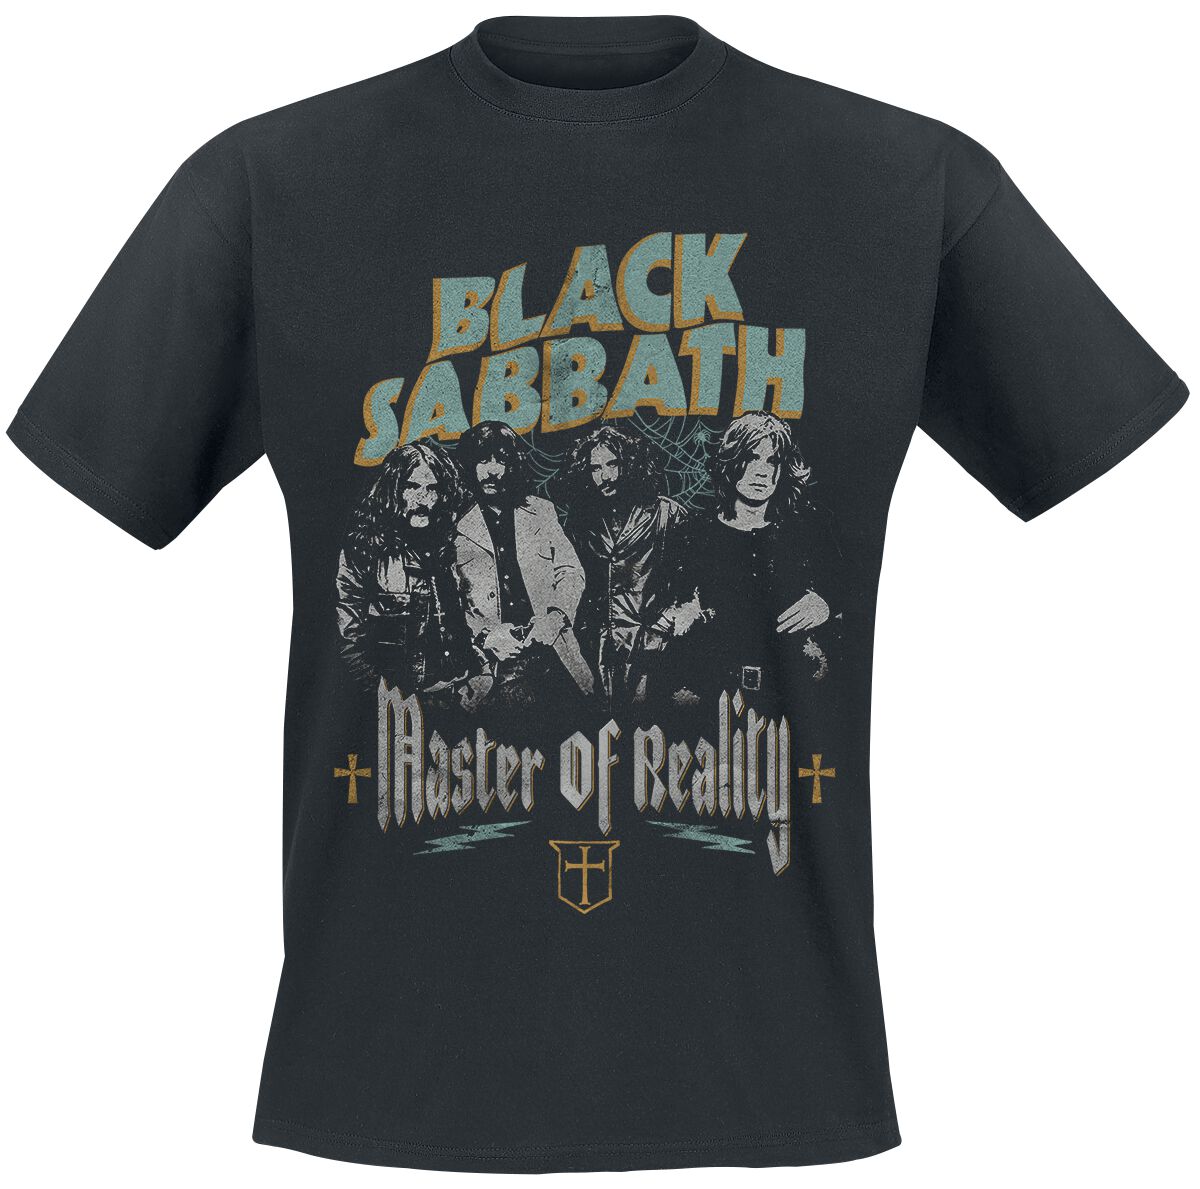 Black Sabbath T-Shirt - Master of reality - S bis 3XL - für Männer - Größe M - schwarz  - Lizenziertes Merchandise!